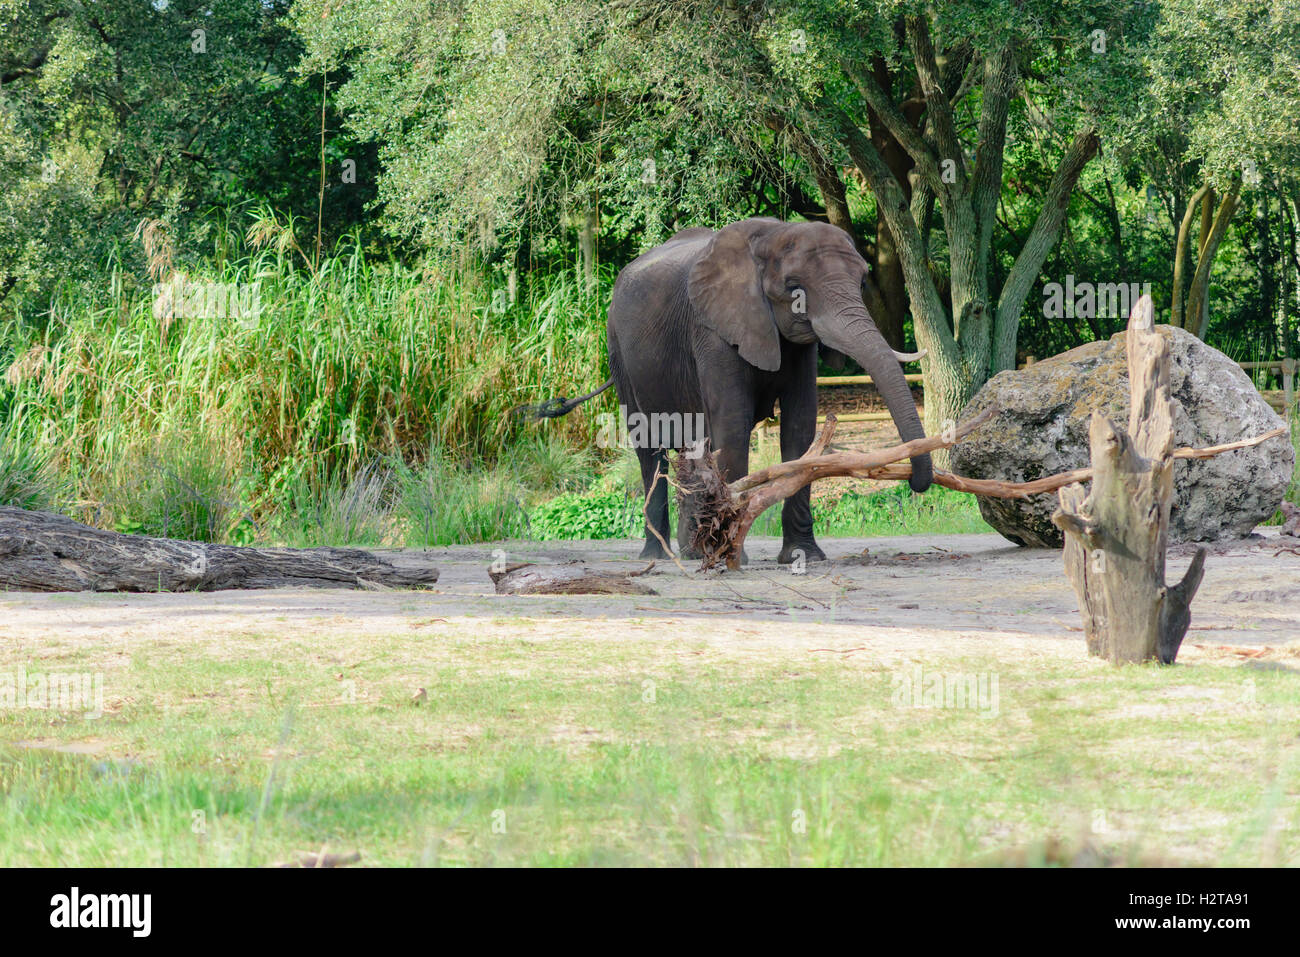 Elephant at Disney's Animal Kingdom carrying small tree Stock Photo